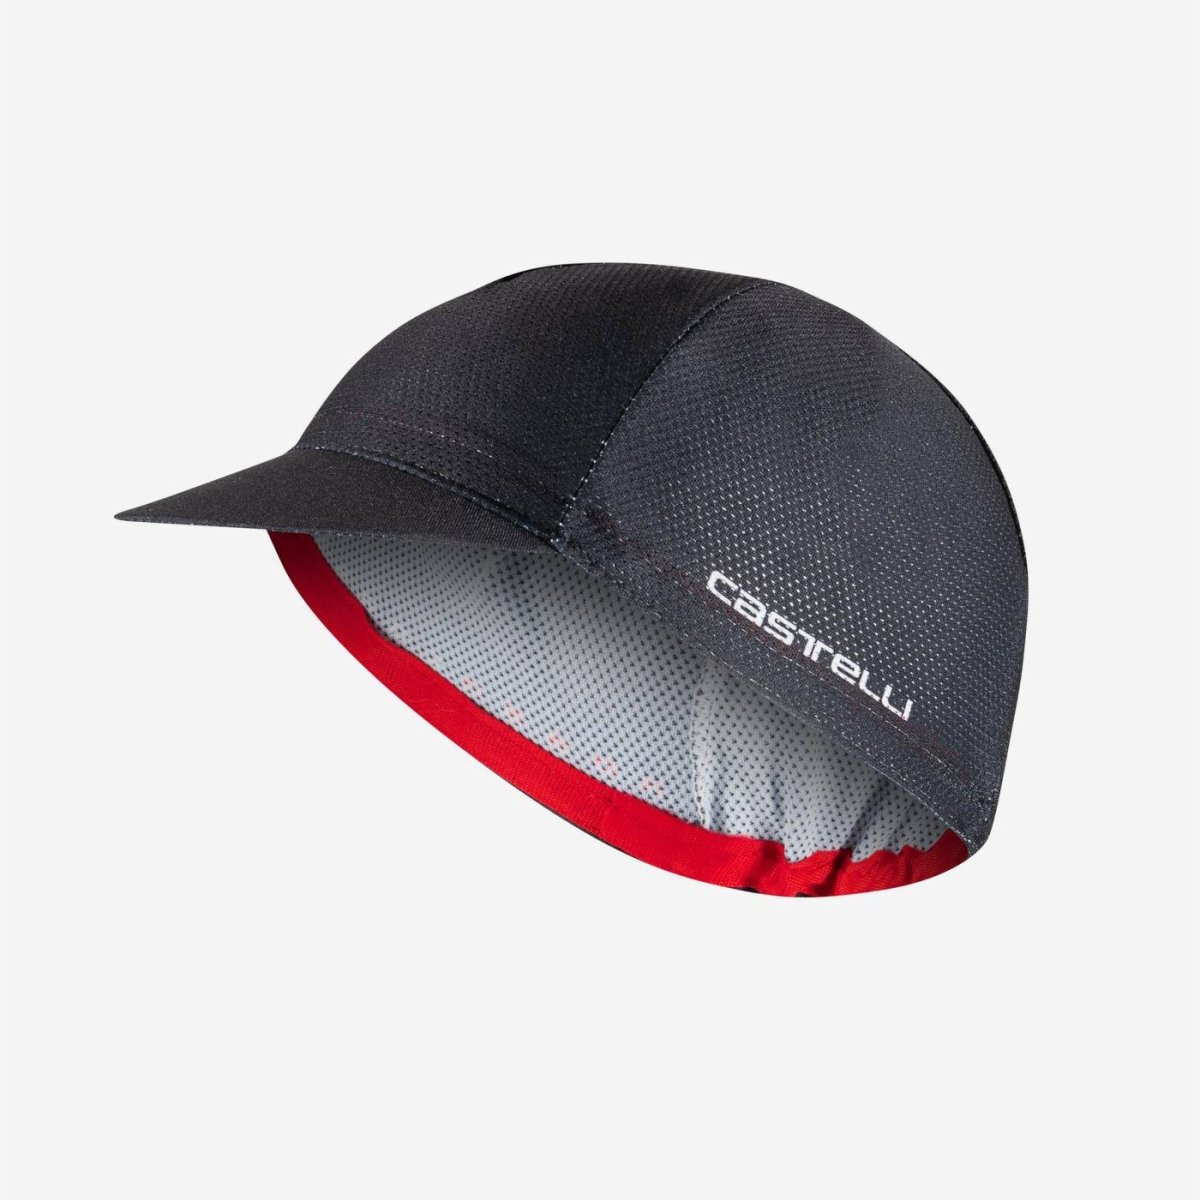 ROSSO CORSA 2 CAP